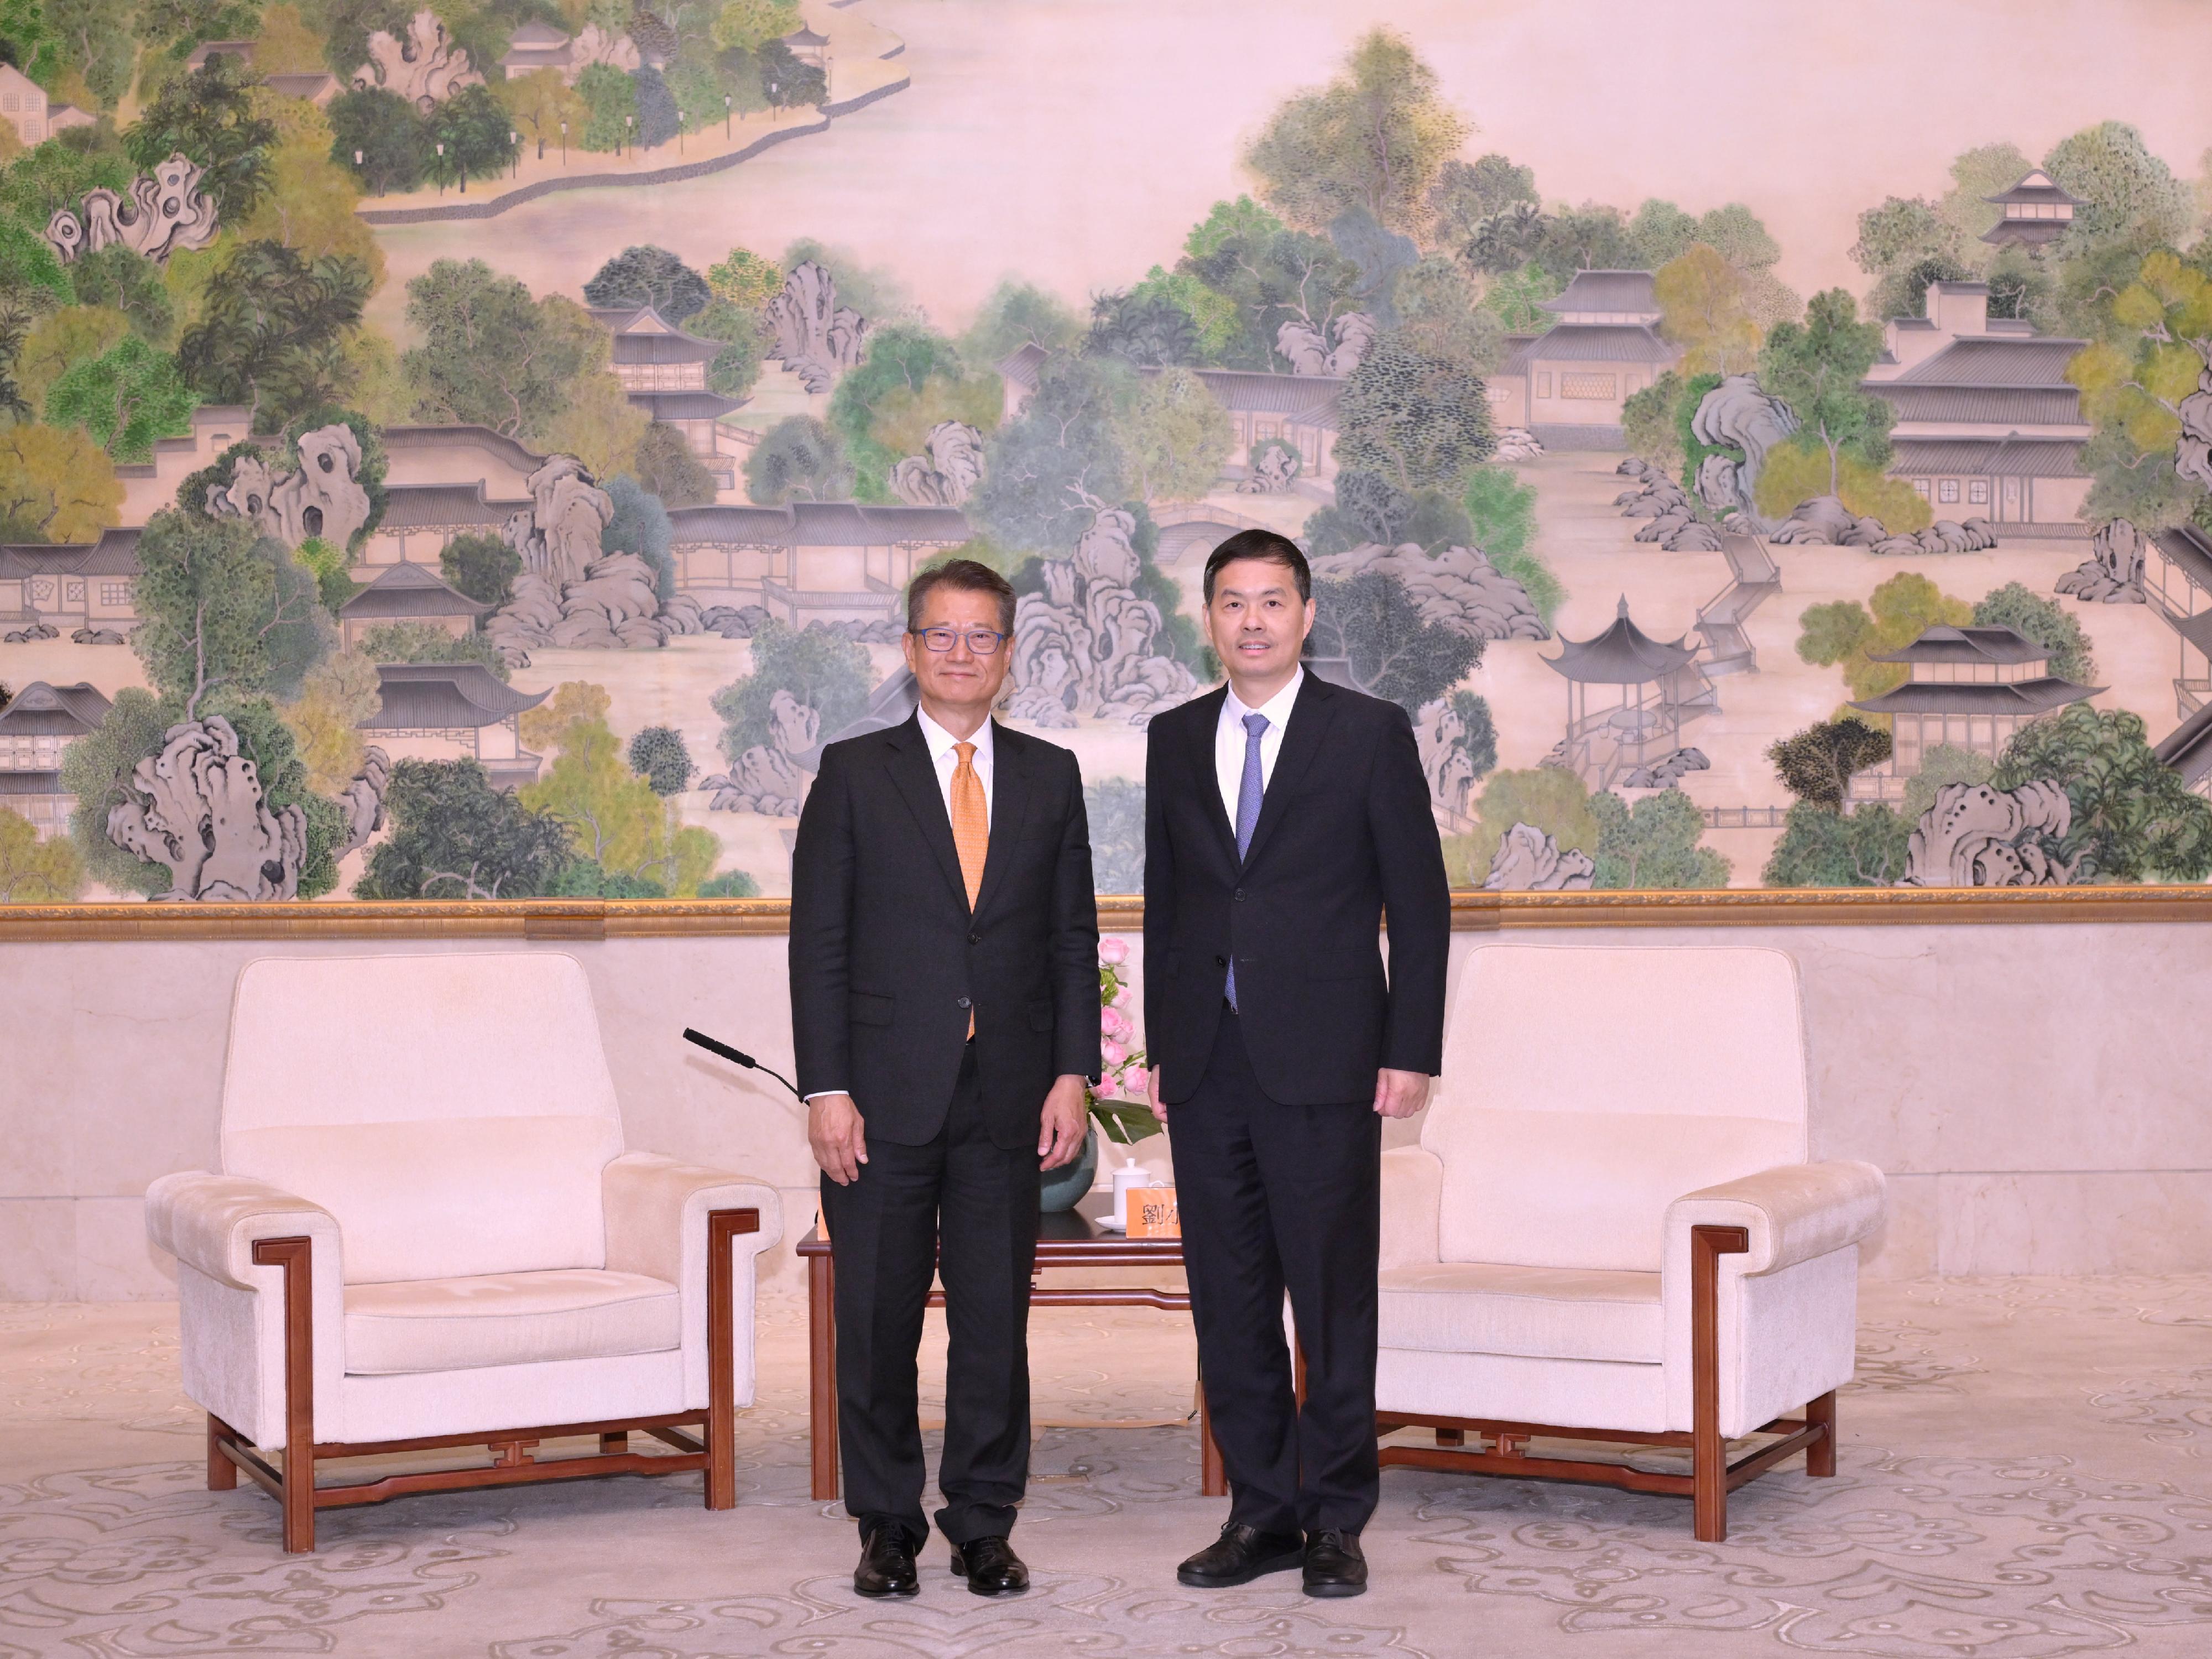 财政司司长陈茂波今日（四月十八日）早上访问杭州后，下午转到苏州访问。图示陈茂波（左）与苏州市委书记刘小涛（右）会面。

